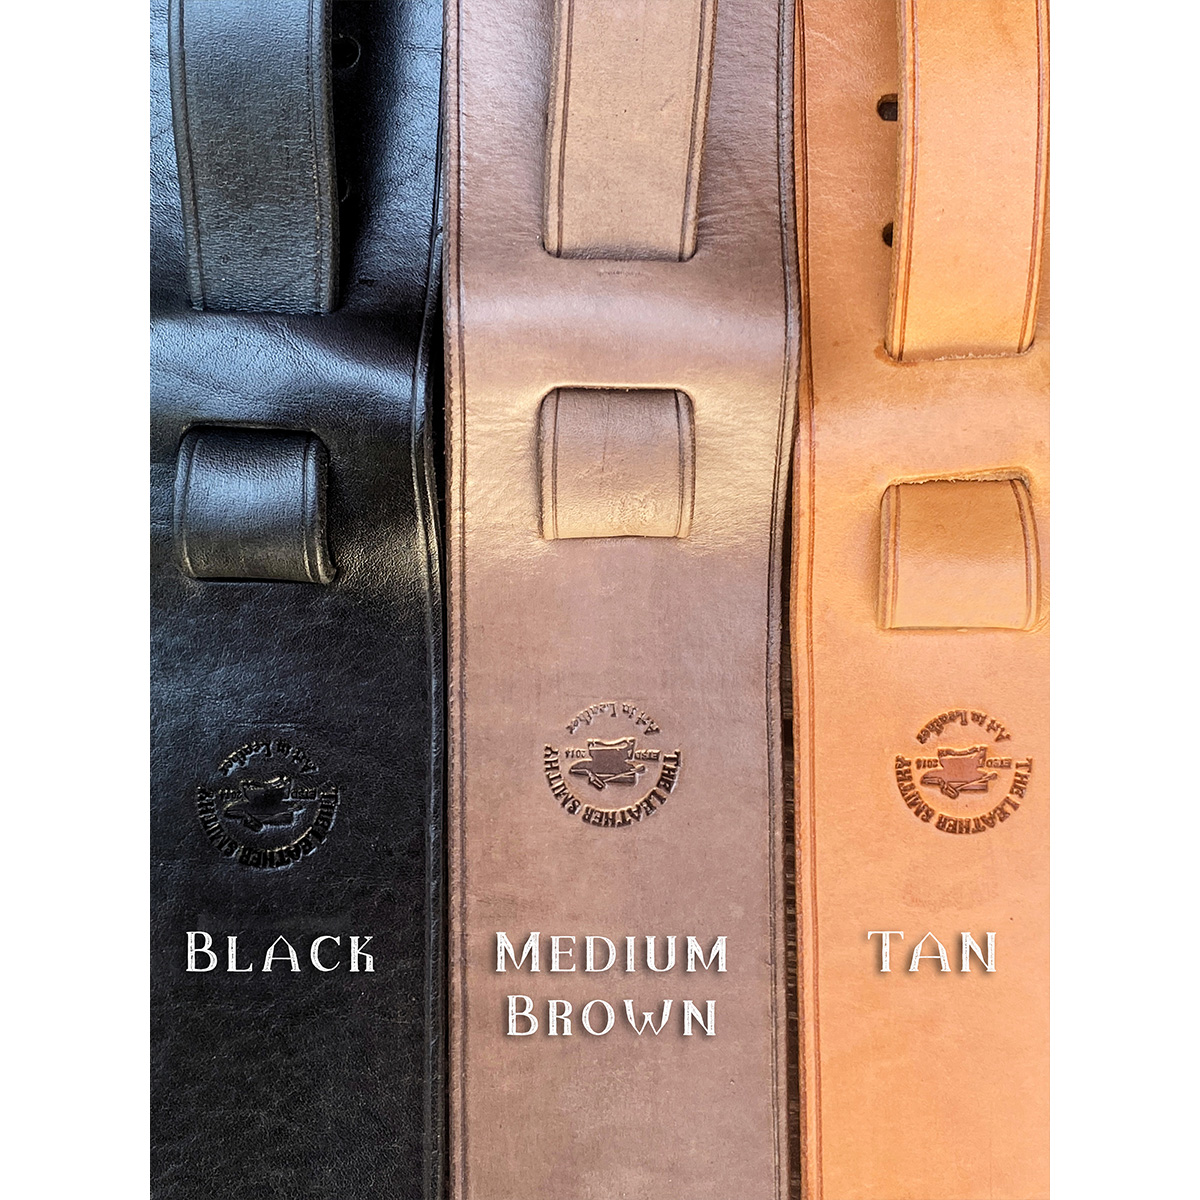 Guitar Strap color options: black, brown, tan